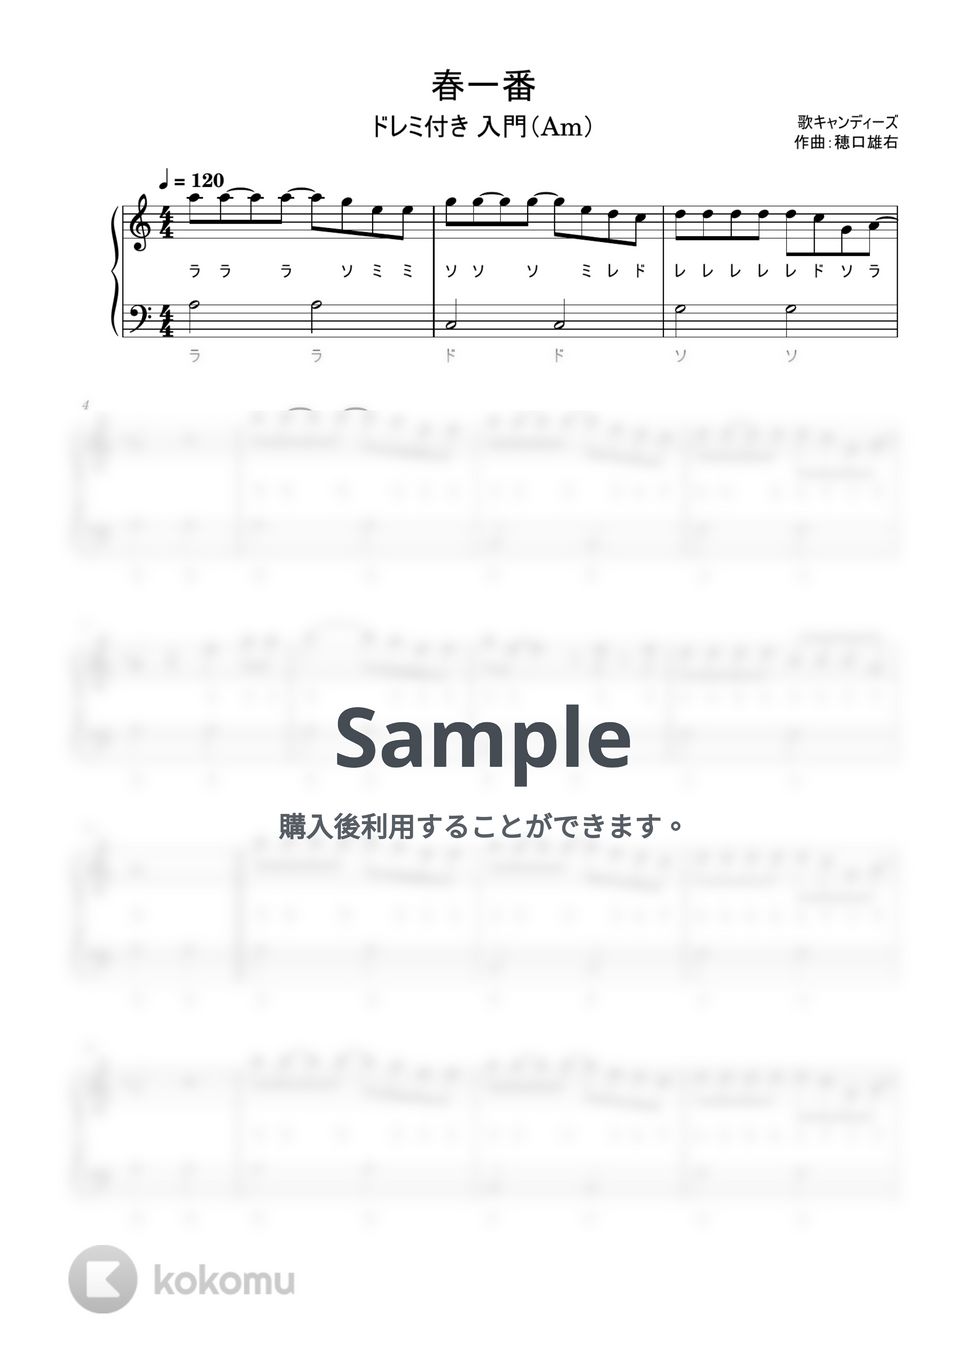 キャンディーズ - 春一番 (ドレミ付き/簡単楽譜) by ピアノ塾